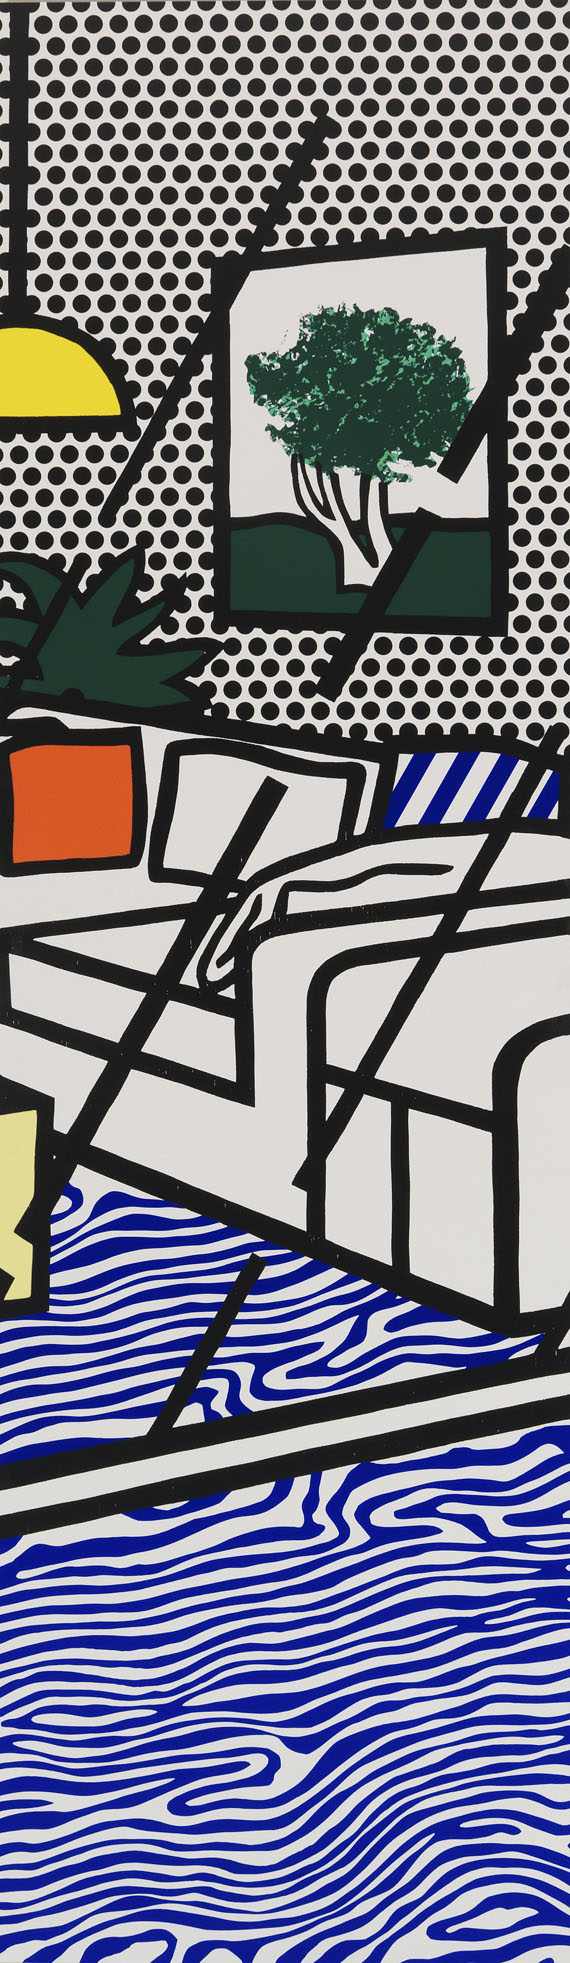 Roy Lichtenstein - Wallpaper with Blue Floor Interior - Altre immagini